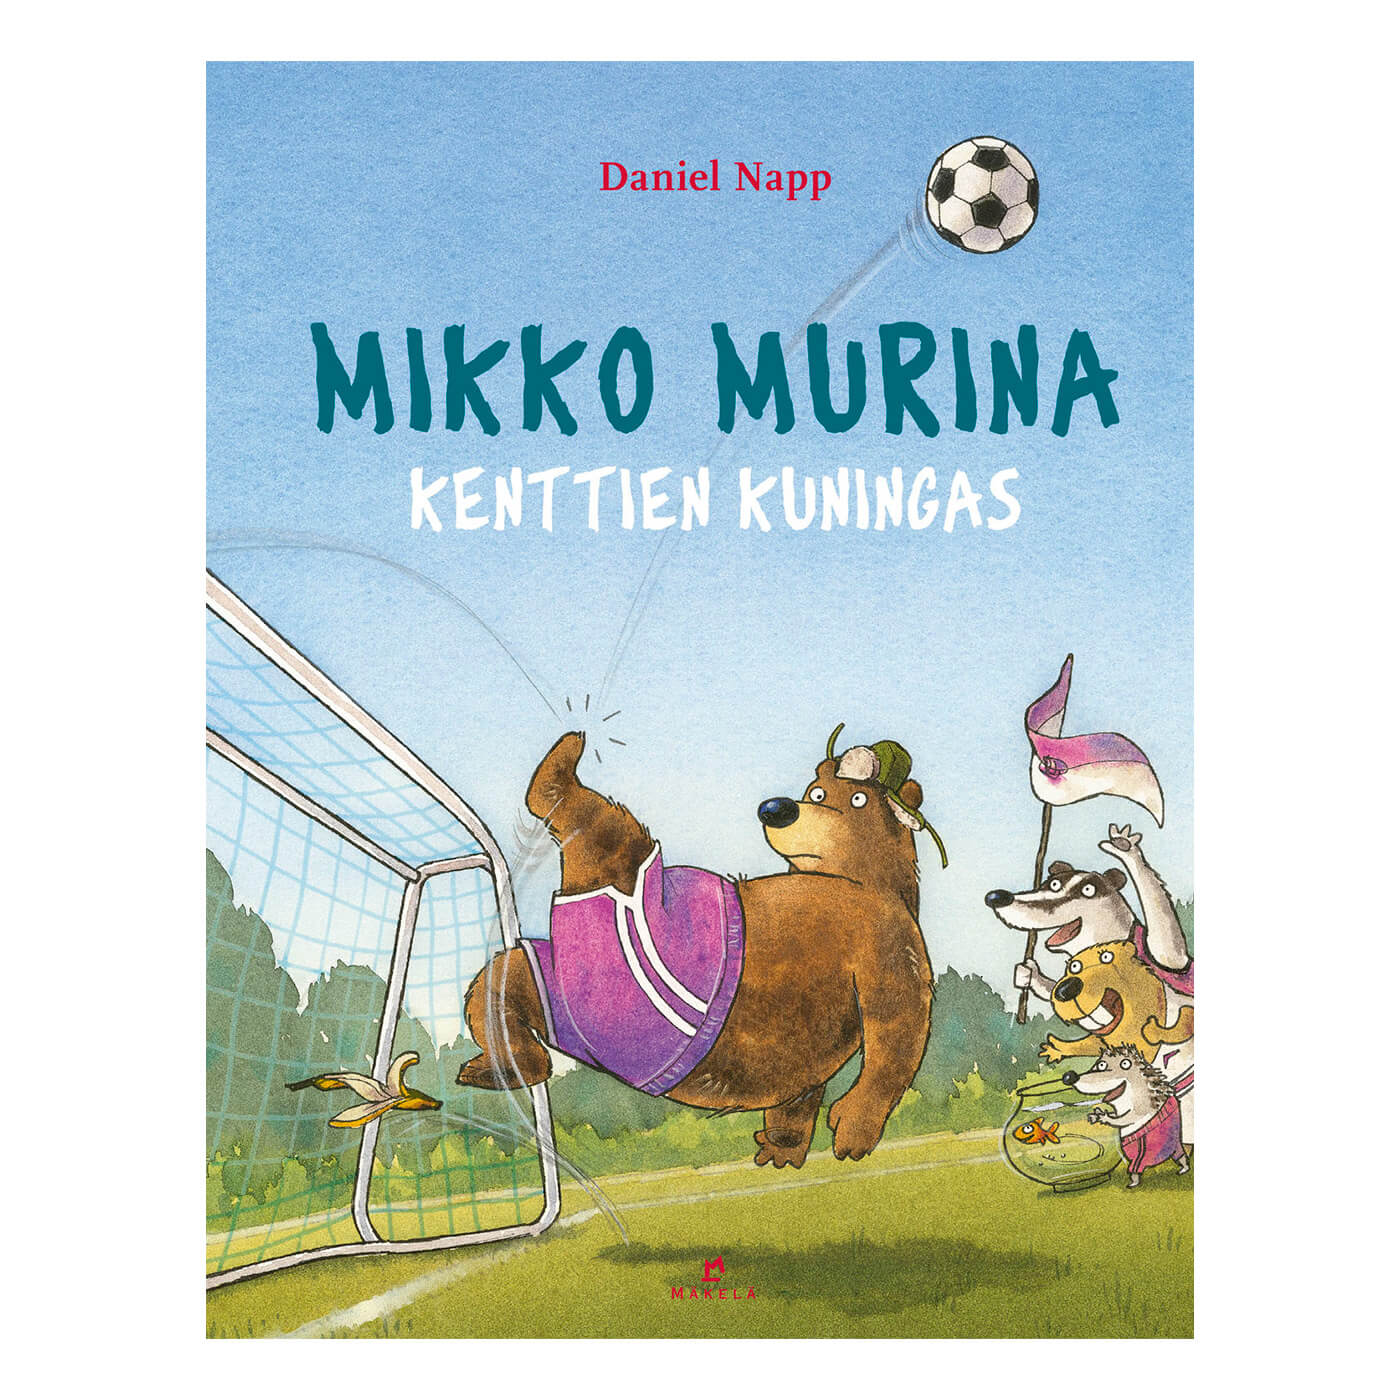 Mikko Murina, kenttien kuningas book